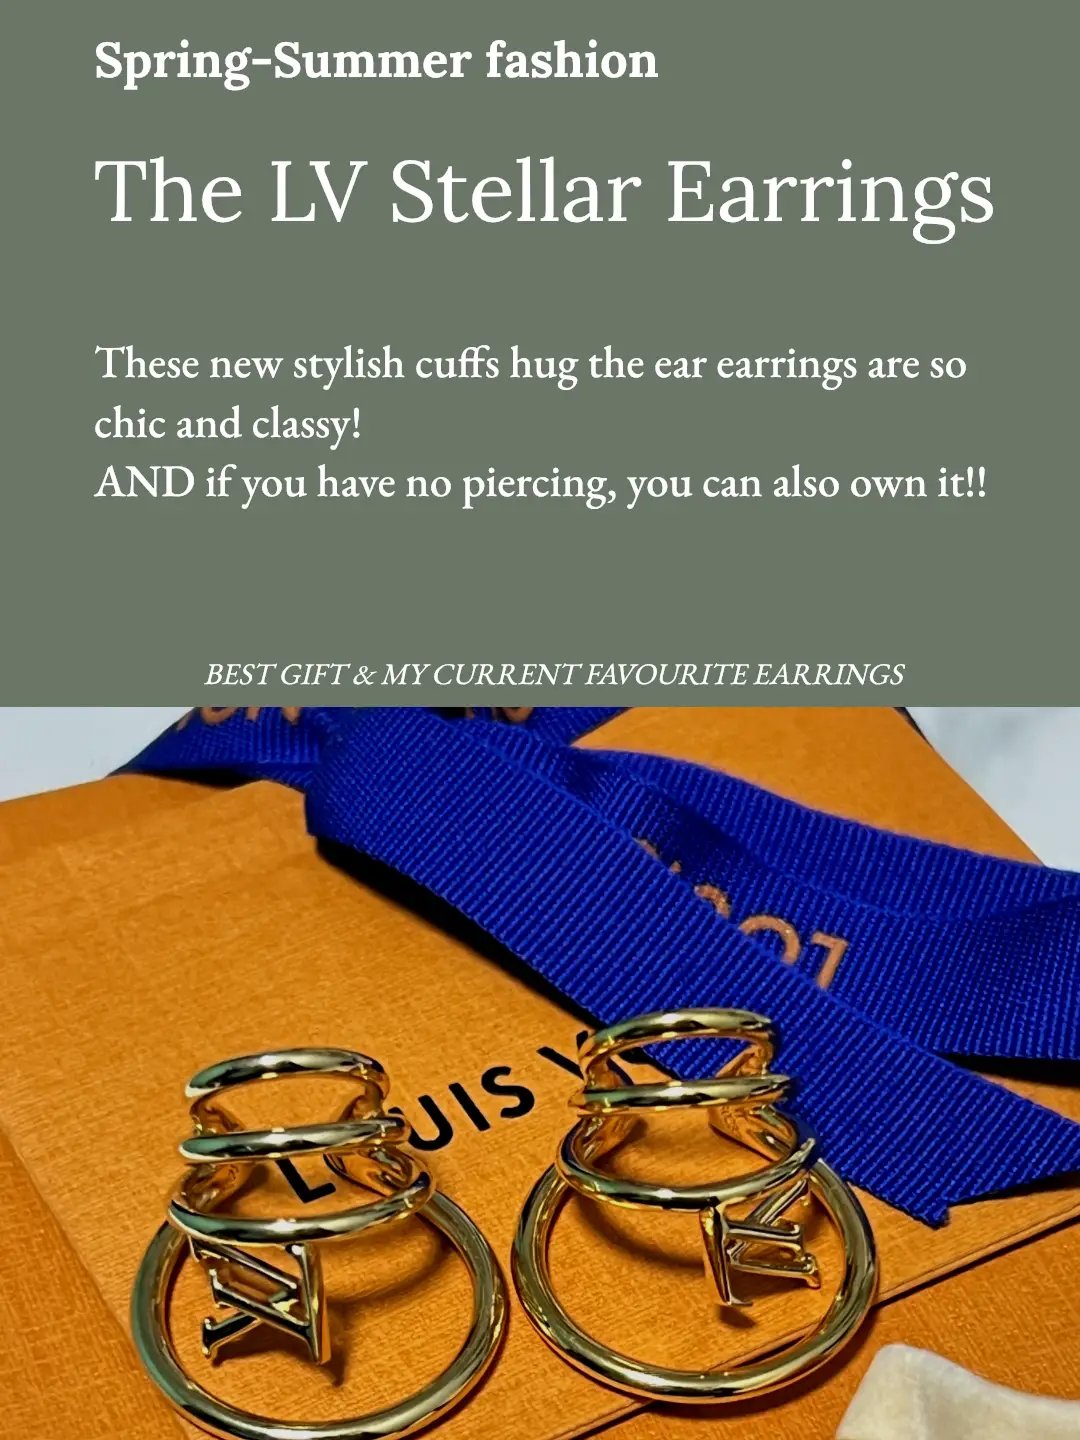 lv stellar earrings